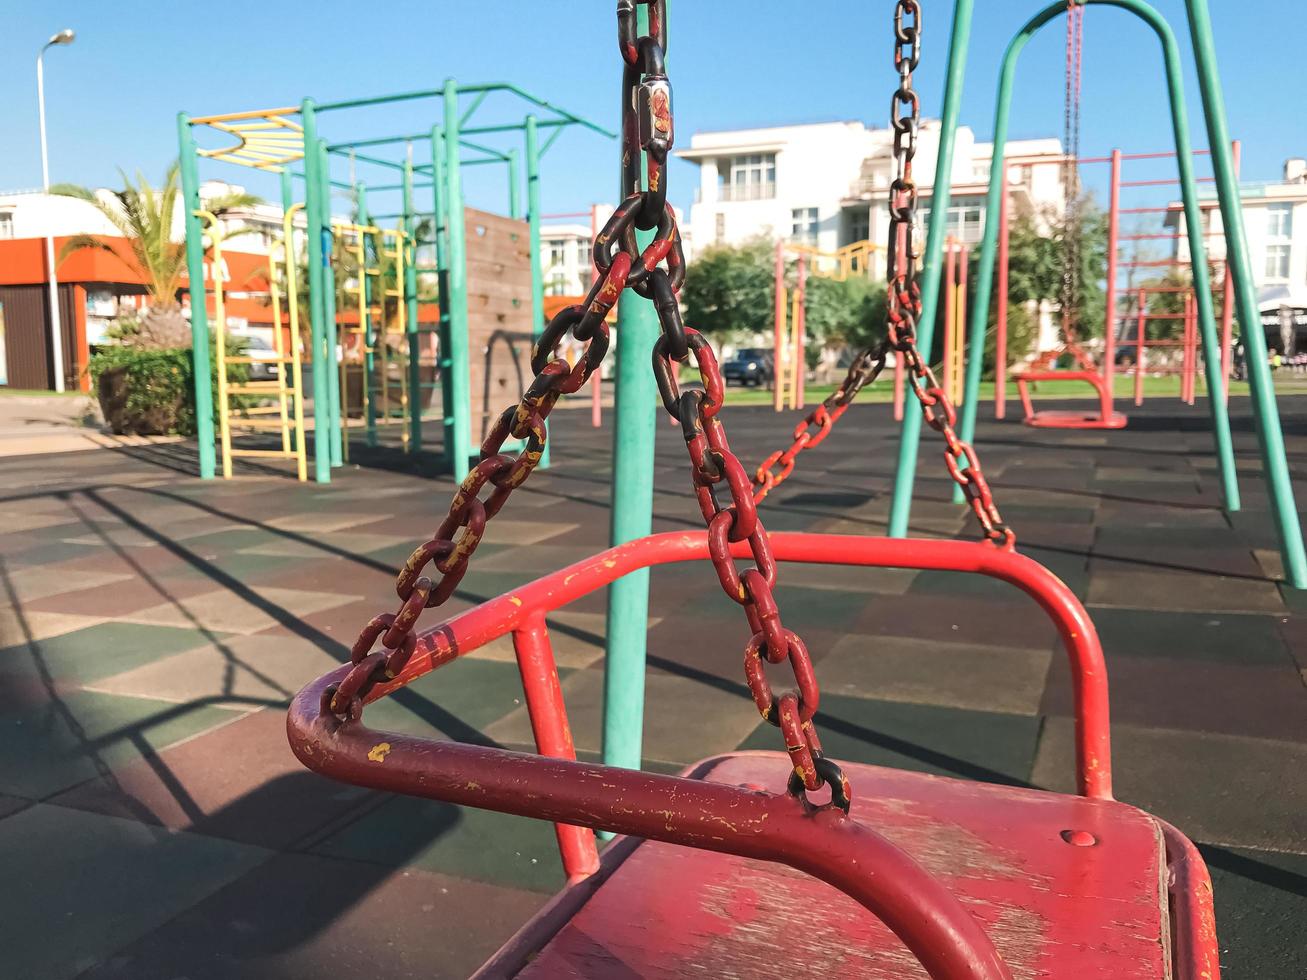 balanços no playground ao ar livre. fechar-se. adler city, rússia foto